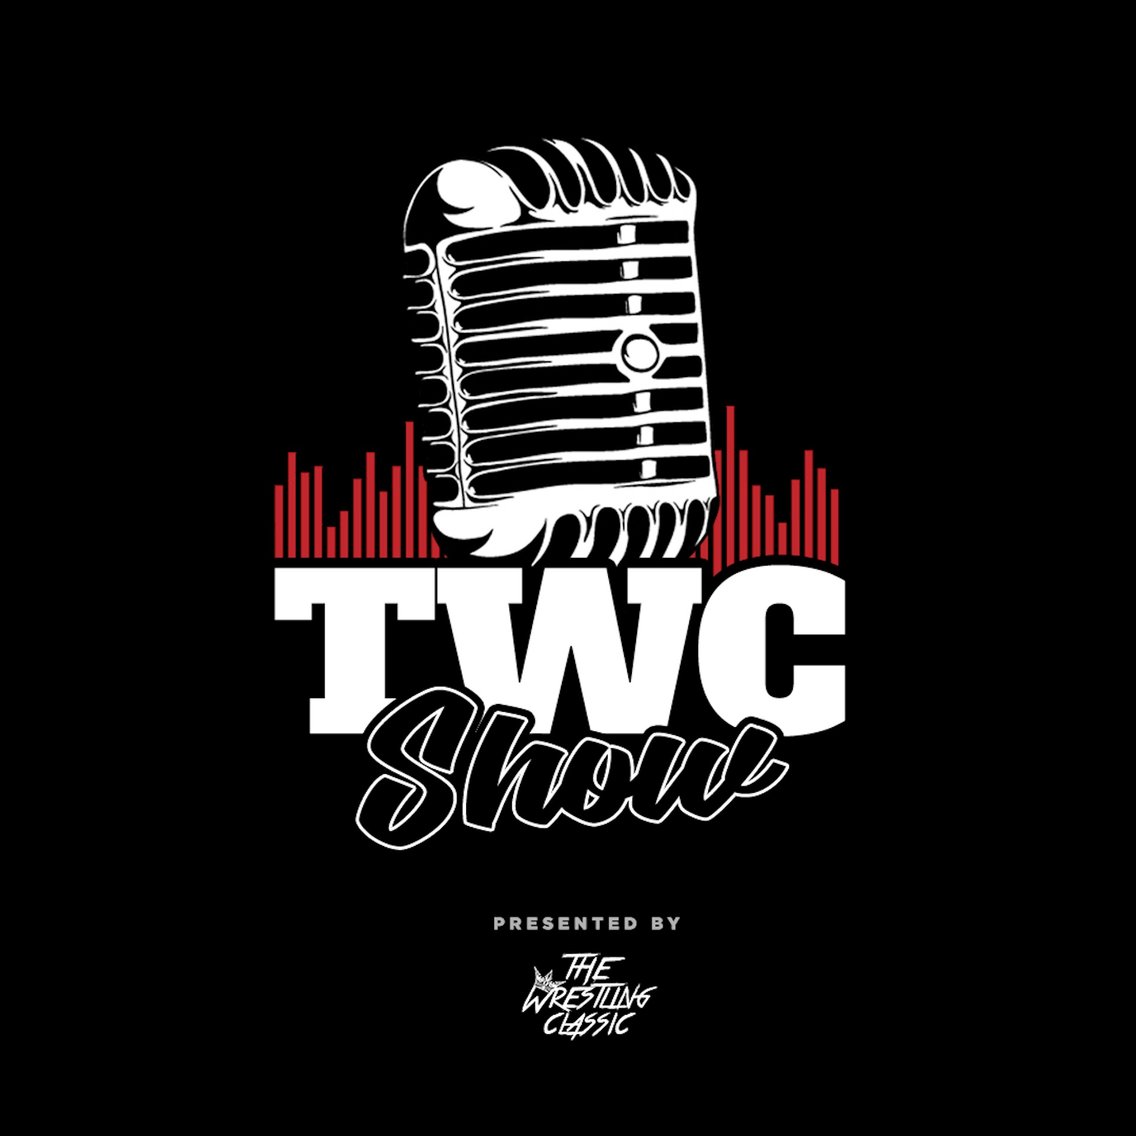 TWC Show - immagine di copertina
